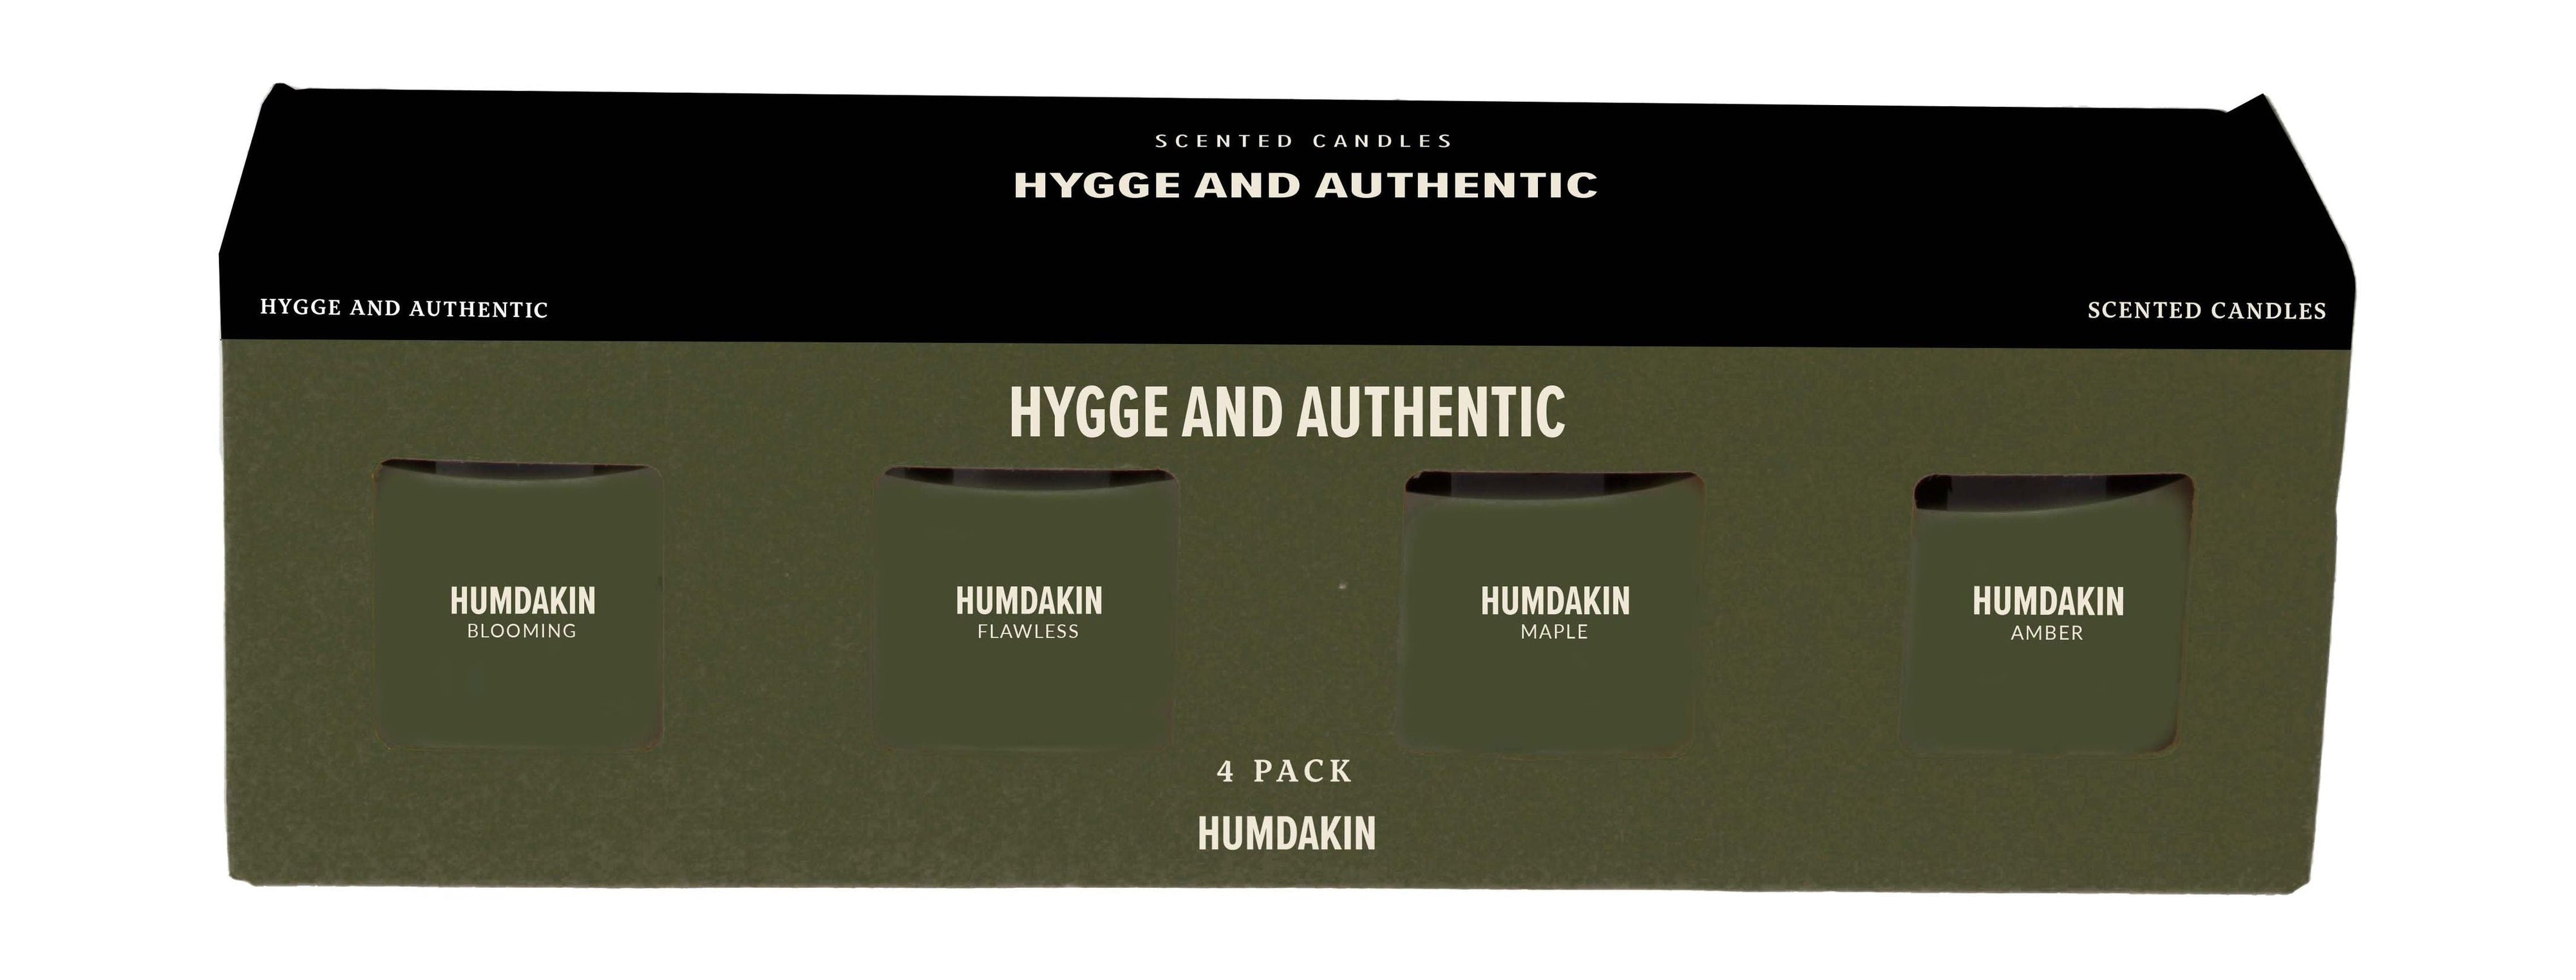 Zestaw świec Humdakin Pached 4, Hygge i autentyczny